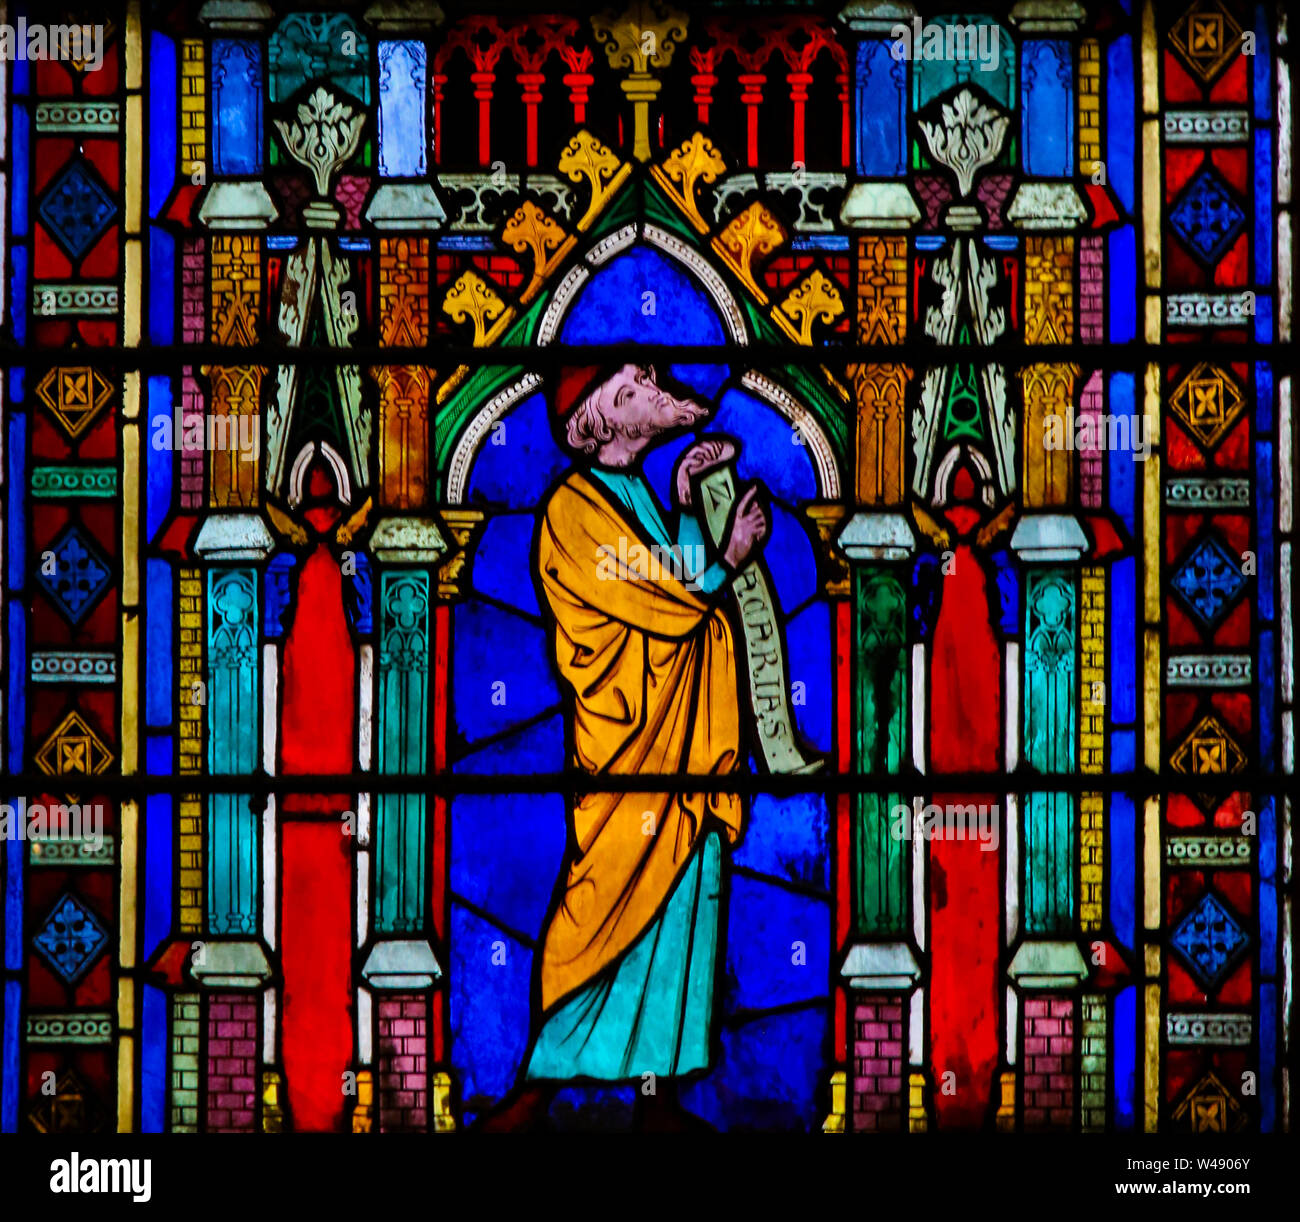 Las vidrieras de la catedral de Notre Dame, París, Francia, representando Zacarías o Zacarías, padre de Juan el Bautista en la Biblia Foto de stock